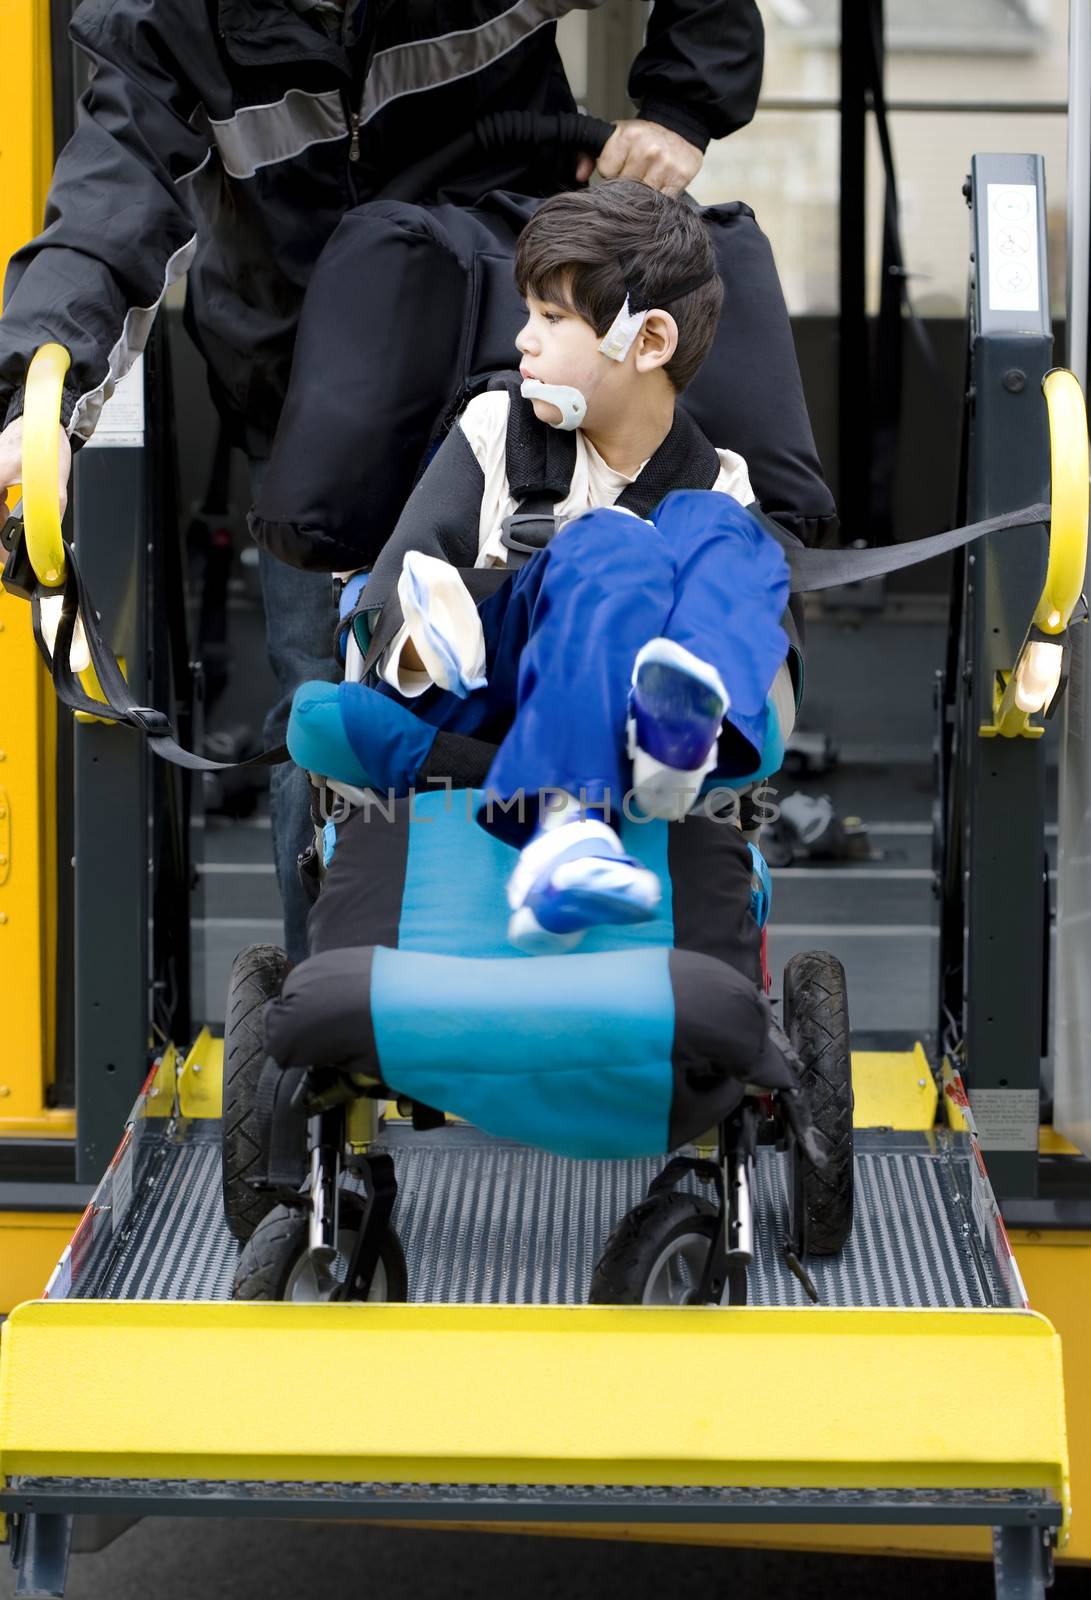 Disabled boy on school bus wheelchair lift  by jarenwicklund